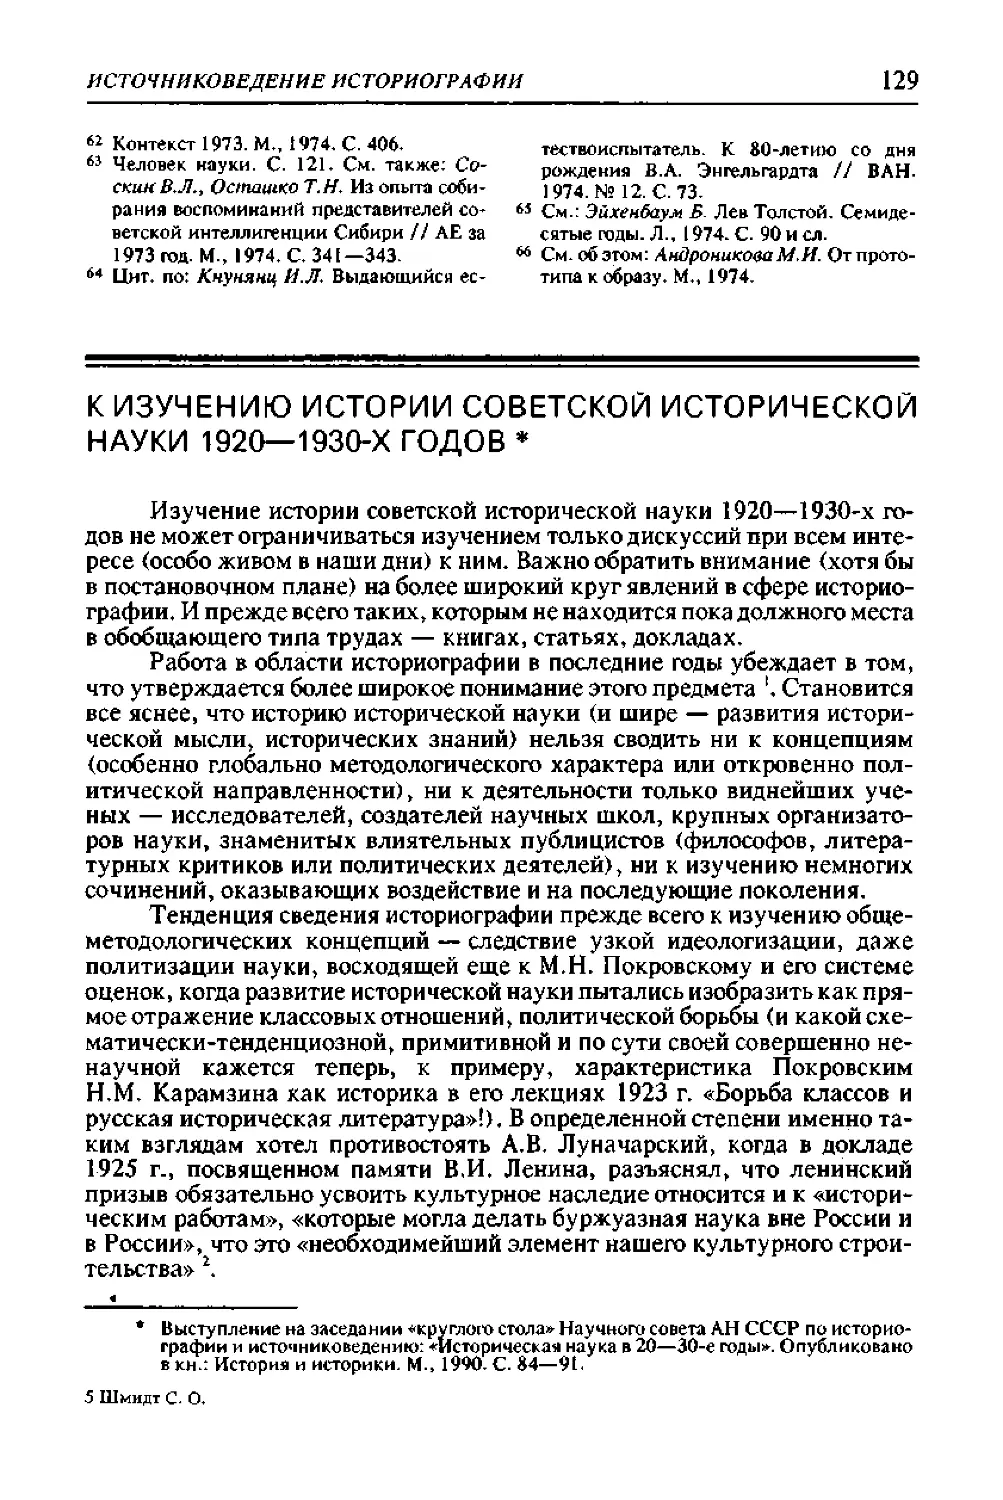 ﻿К изучению истории советской исторической науки 1920—1930-х годо